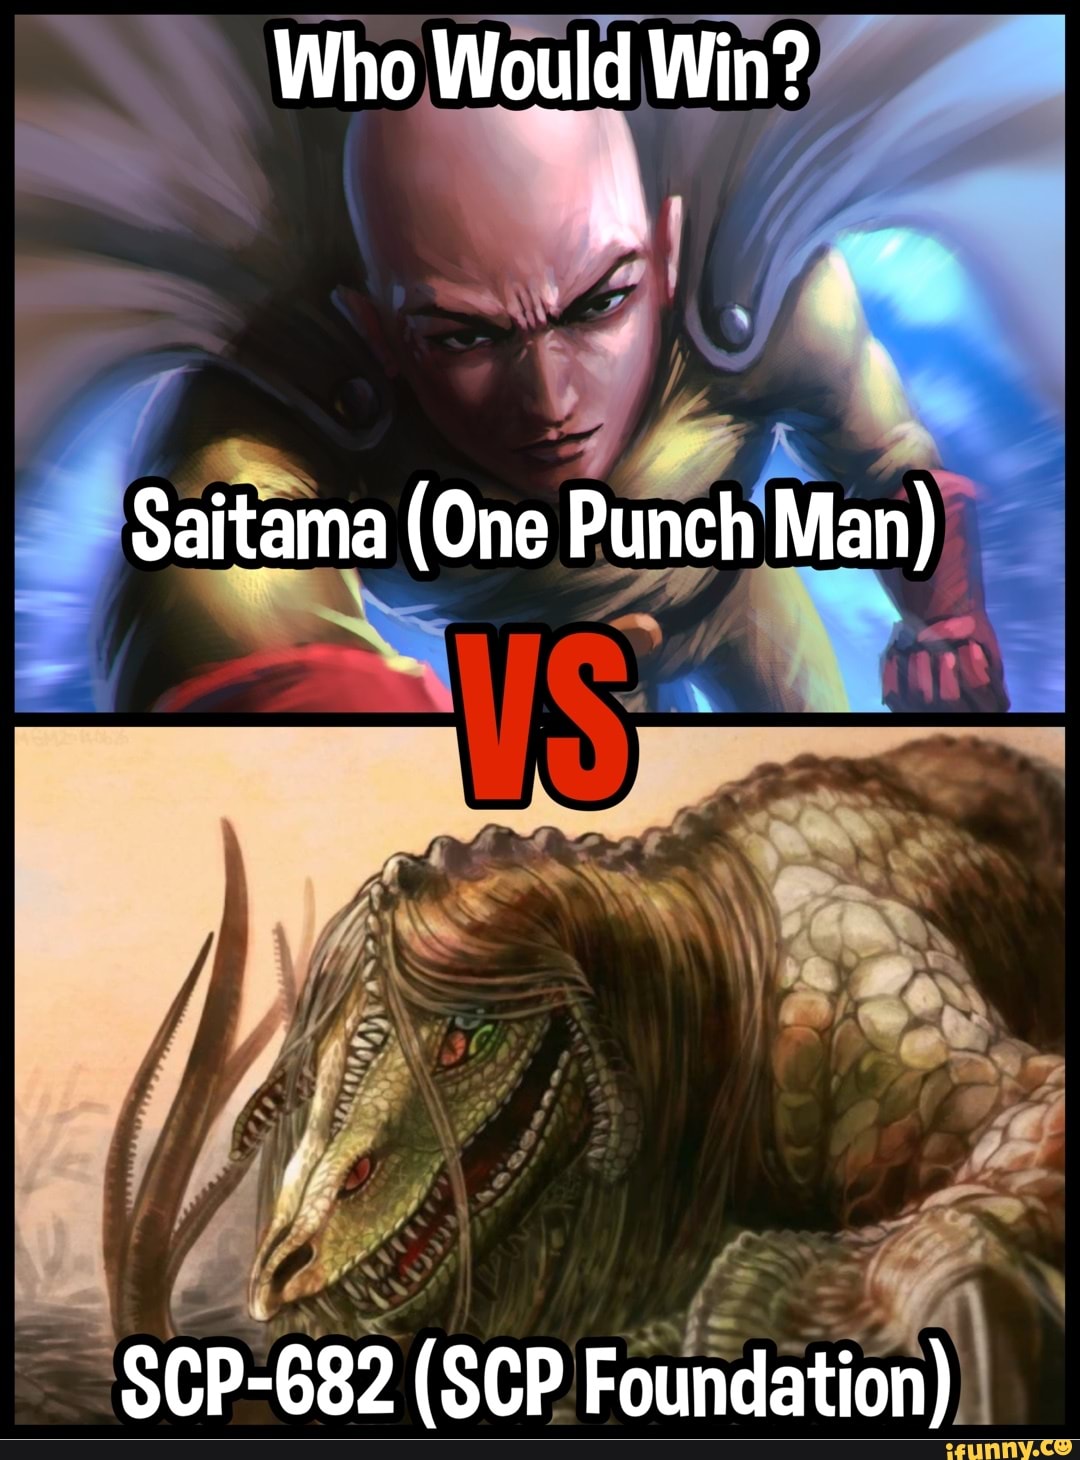 Could Saitama defeat SCP-682? - Quora